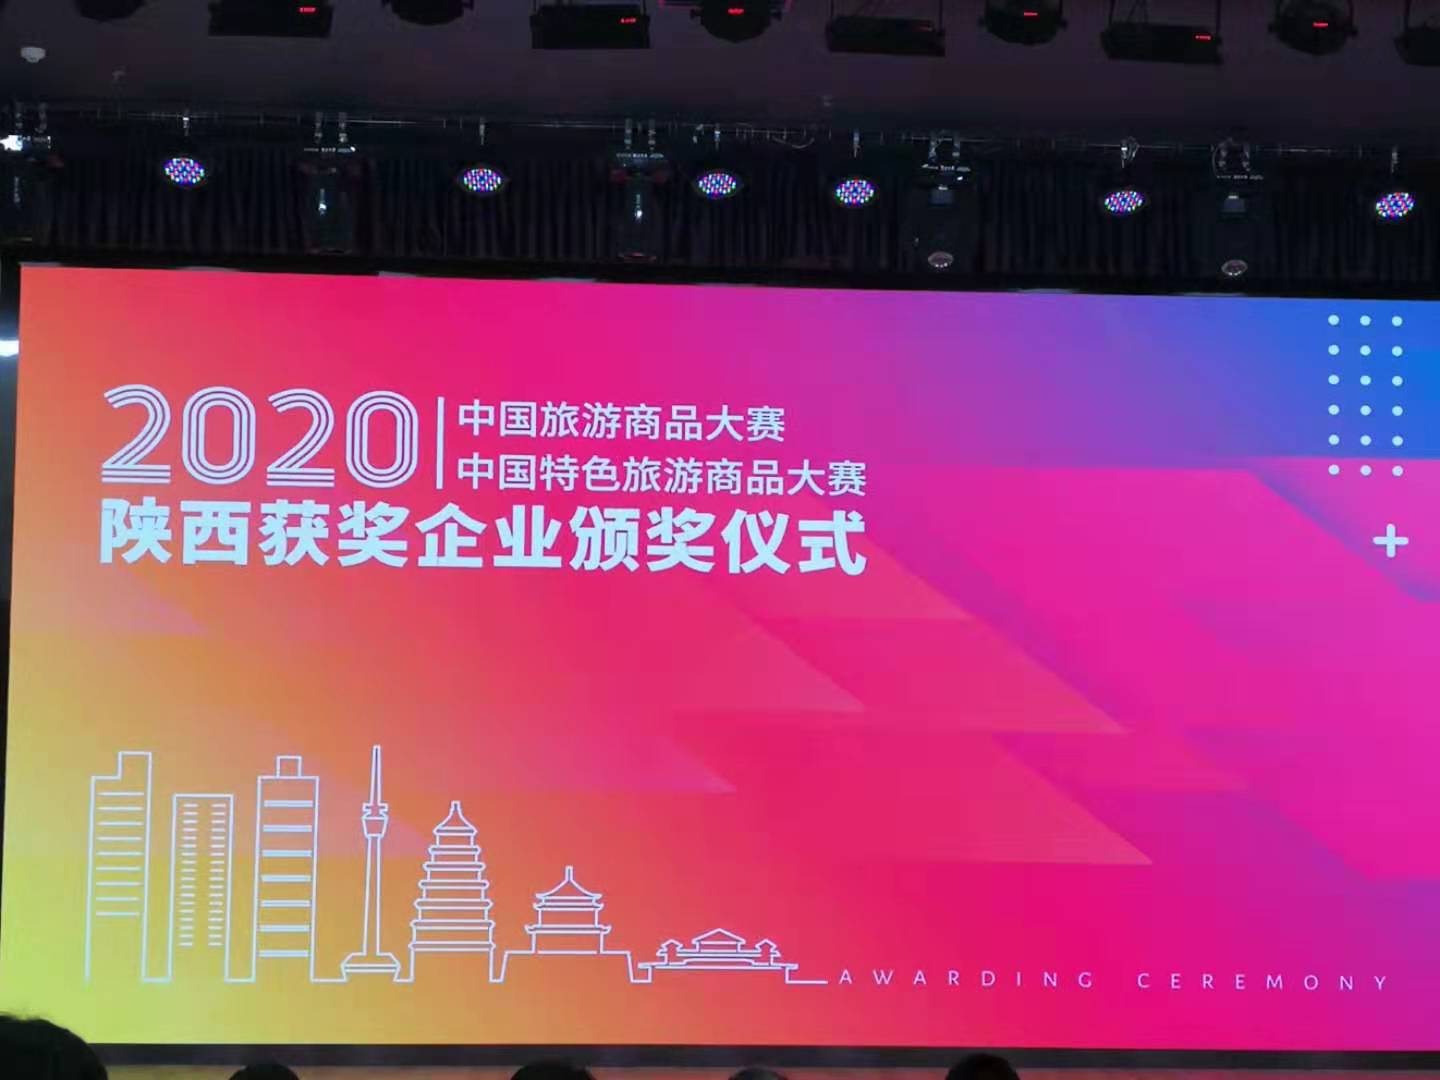 2020中国特色旅游商品大赛 开始颁奖啦